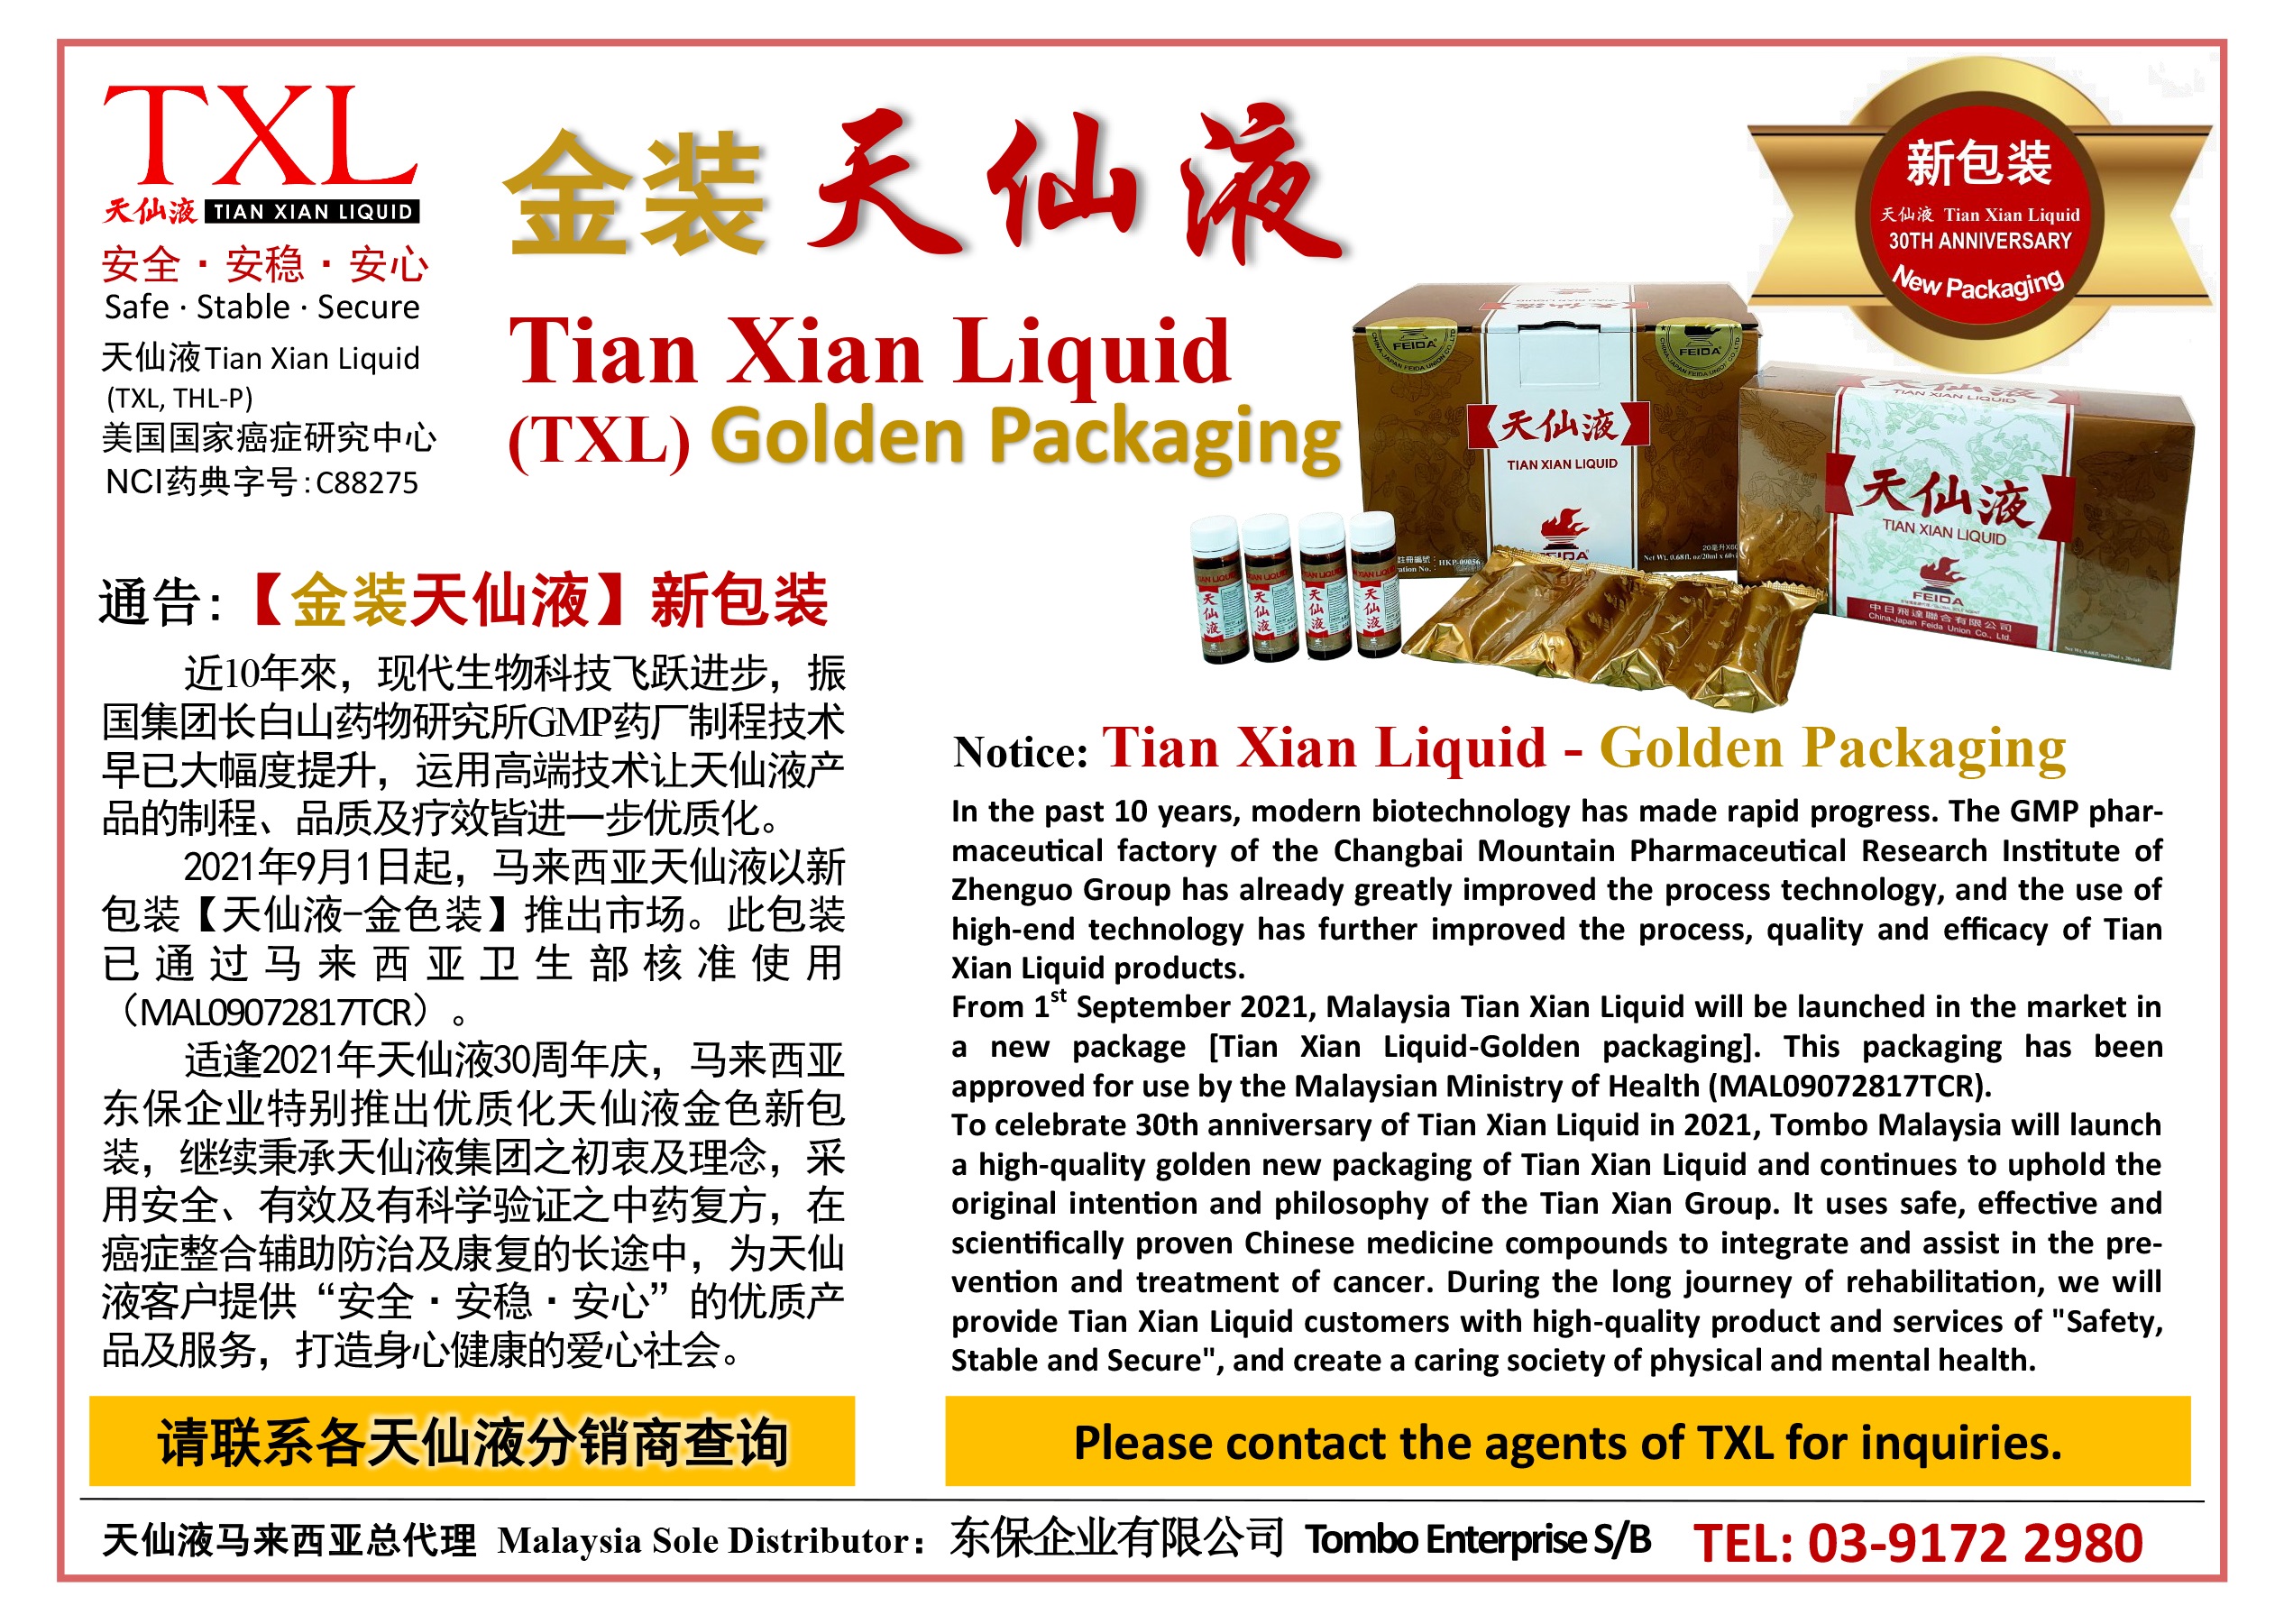 Notice: Tian Xian Liquid - Golden Packaging